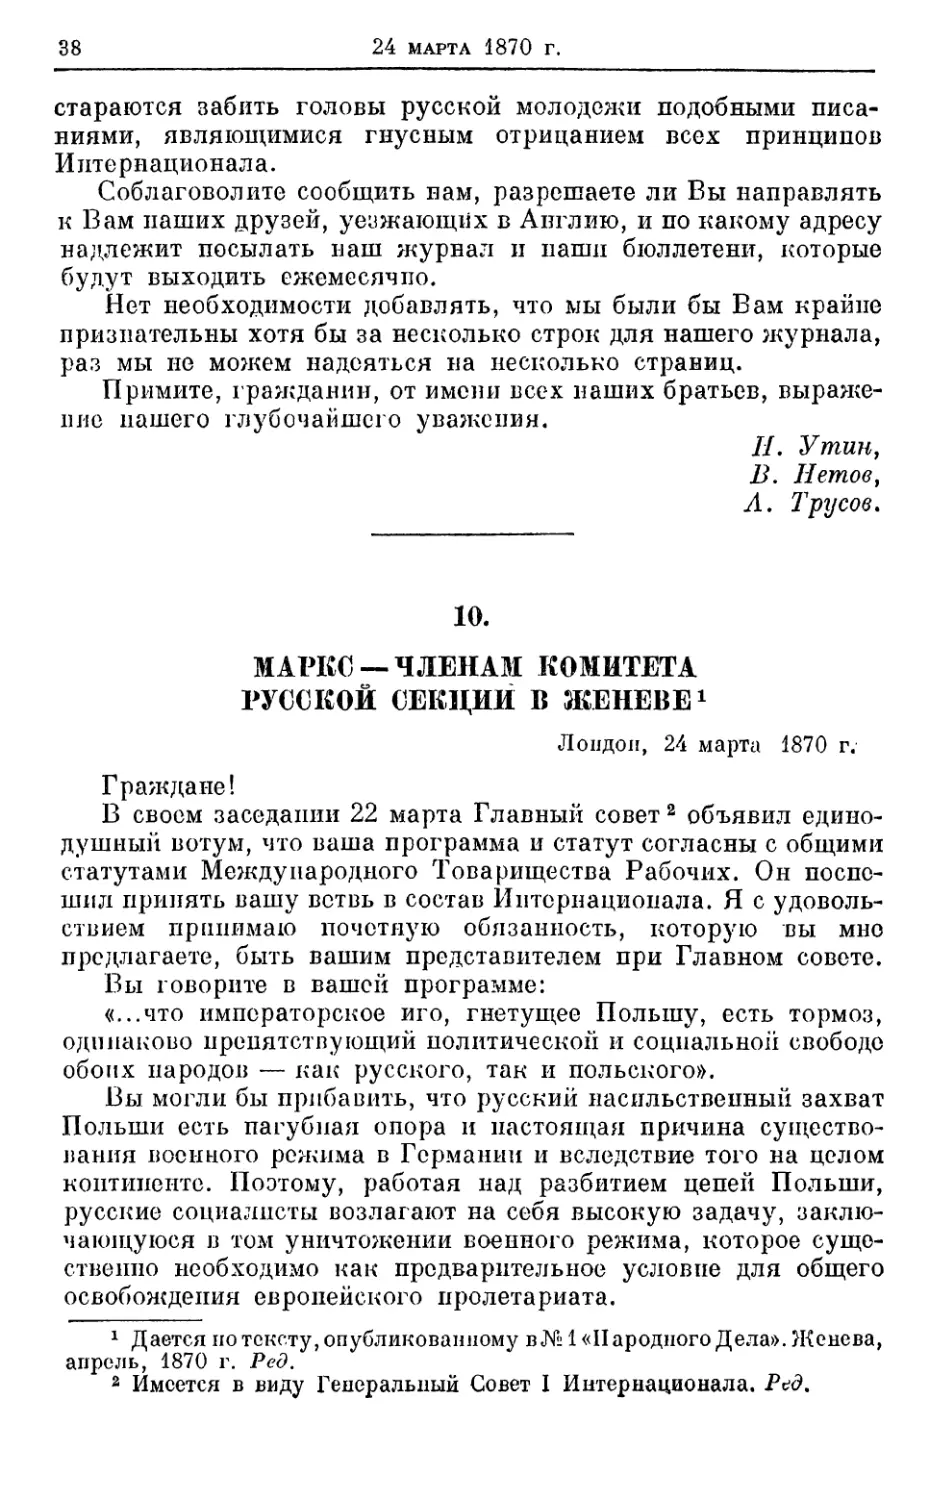 10. Маркс — членам комитета Русской секции в Женеве, 24 марта 1870г